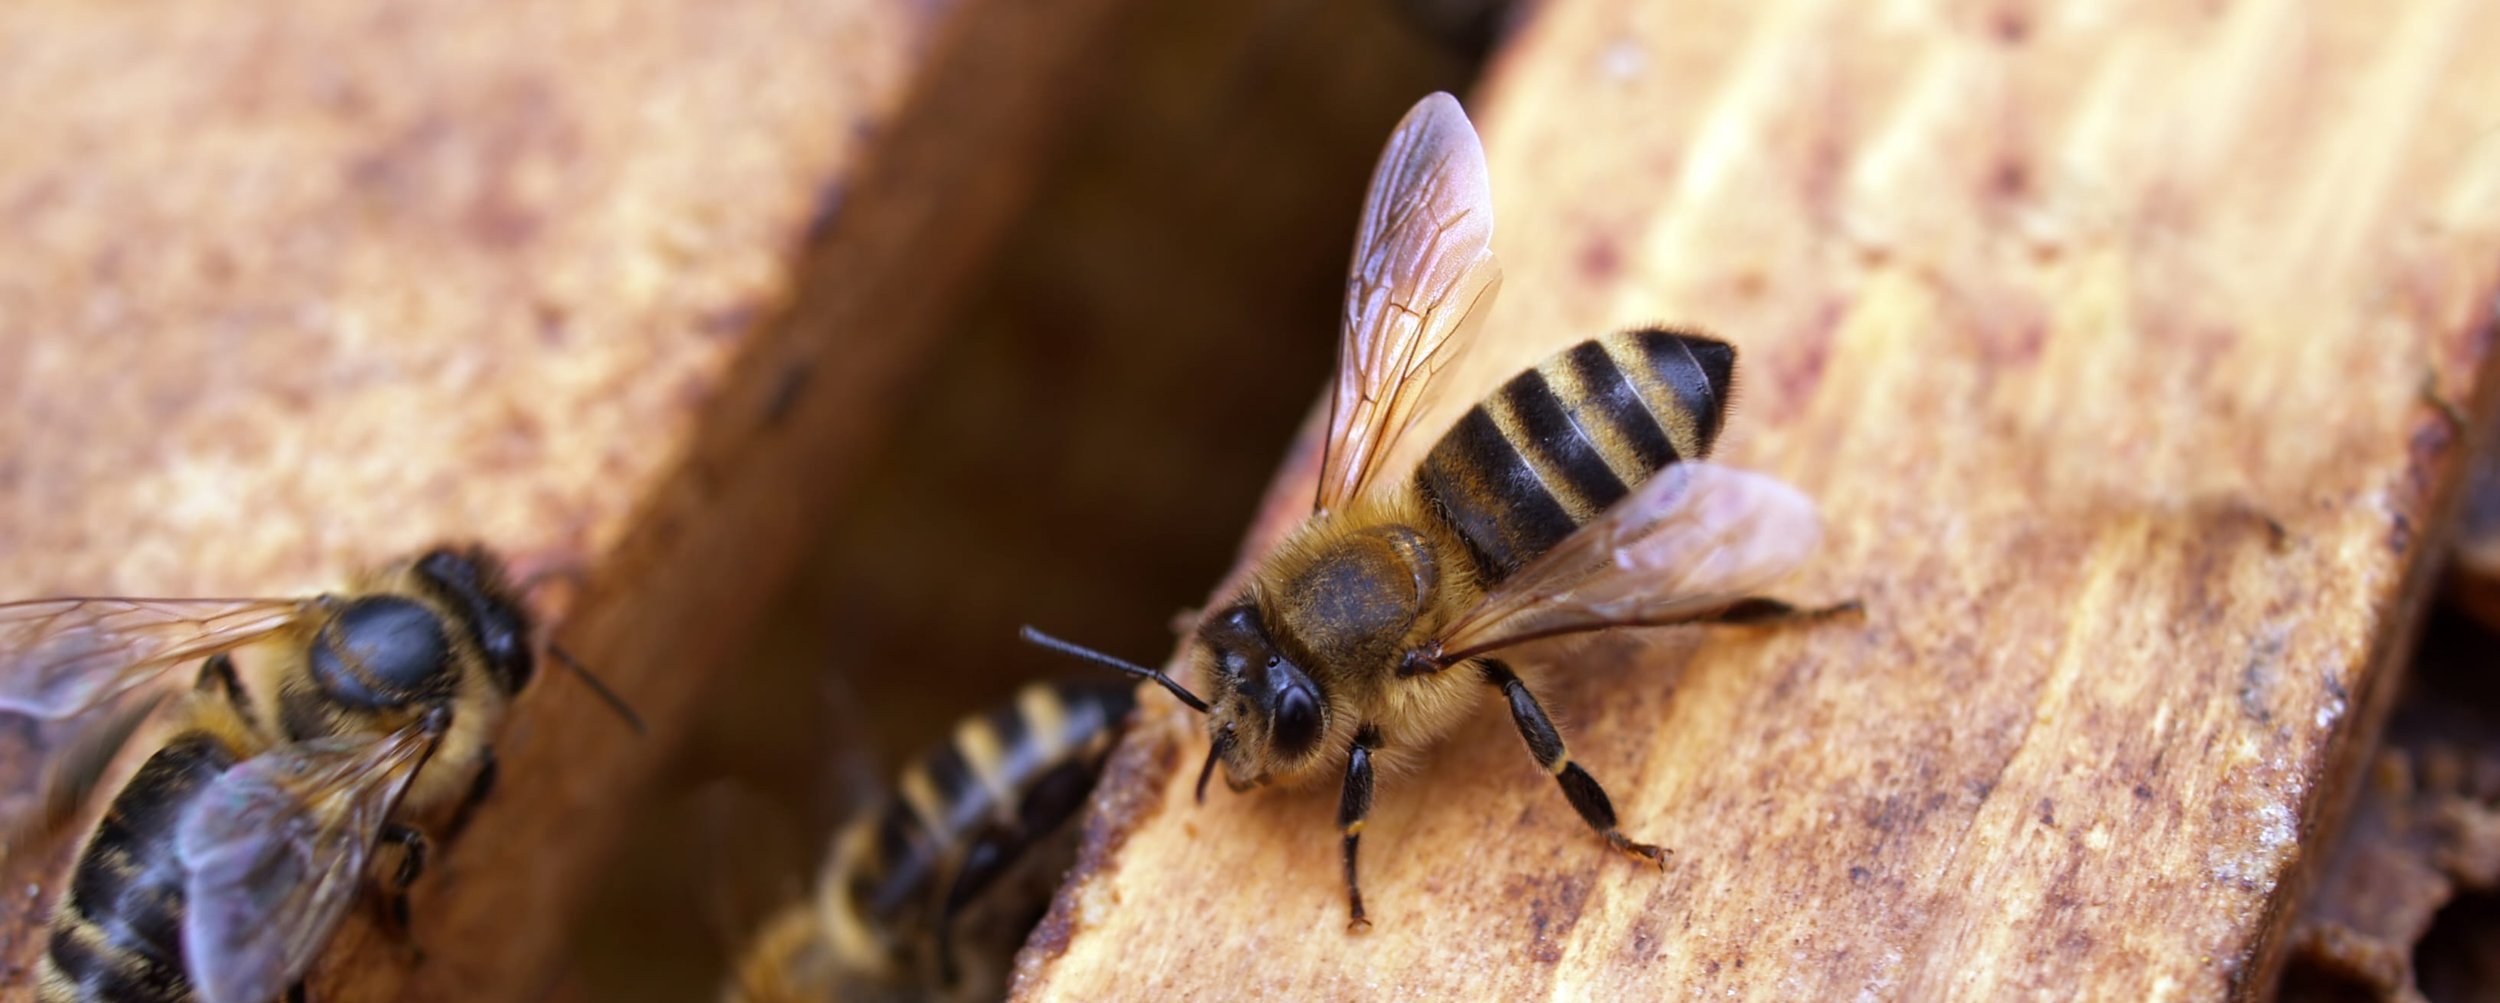 Queen Bees - Olivarez Honey Bees, Inc.